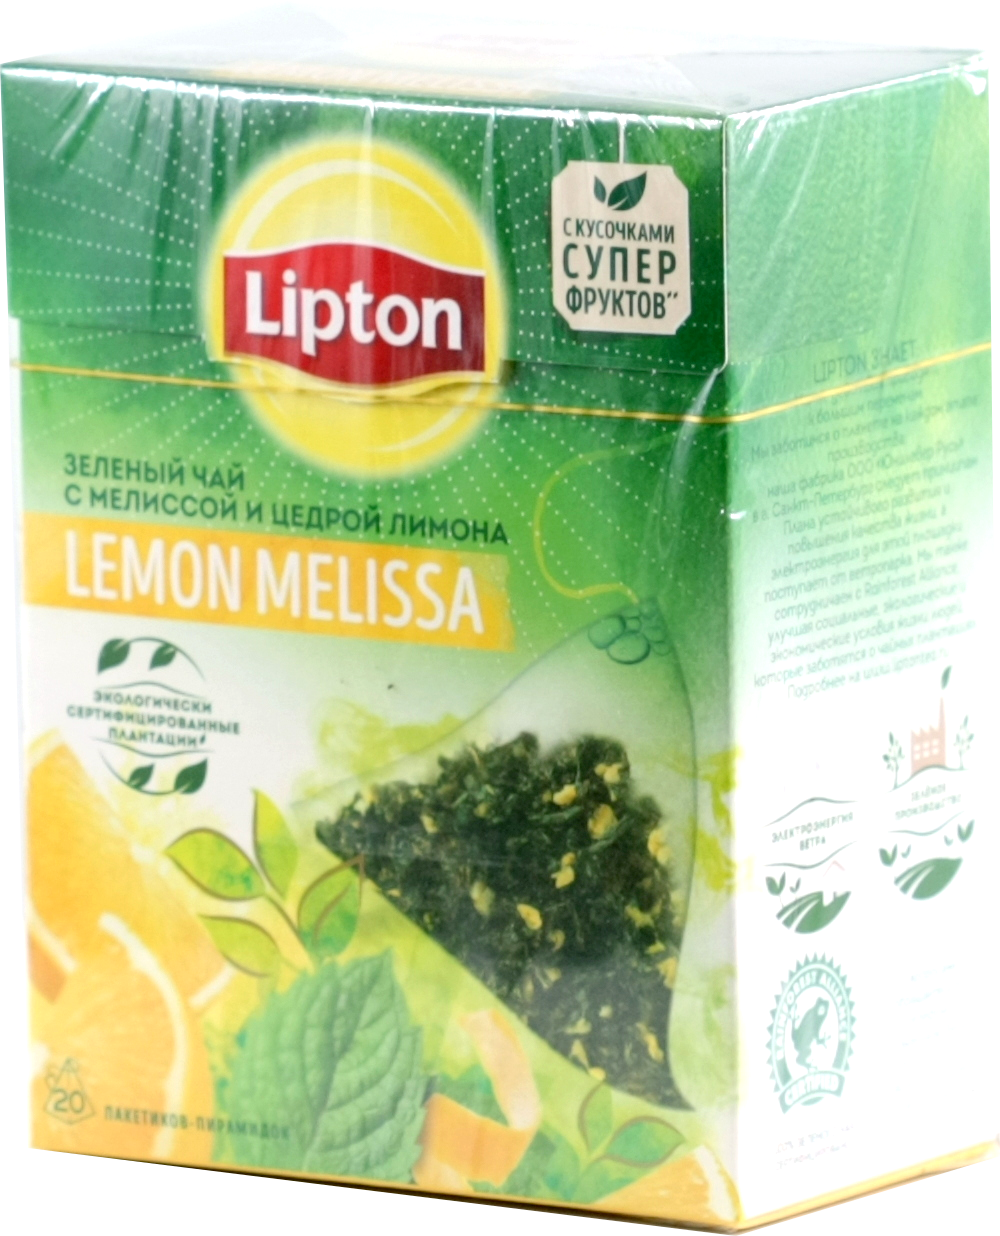 Lipton. Lemon Melissa 51 гр. карт.пачка, 20 пирамидки